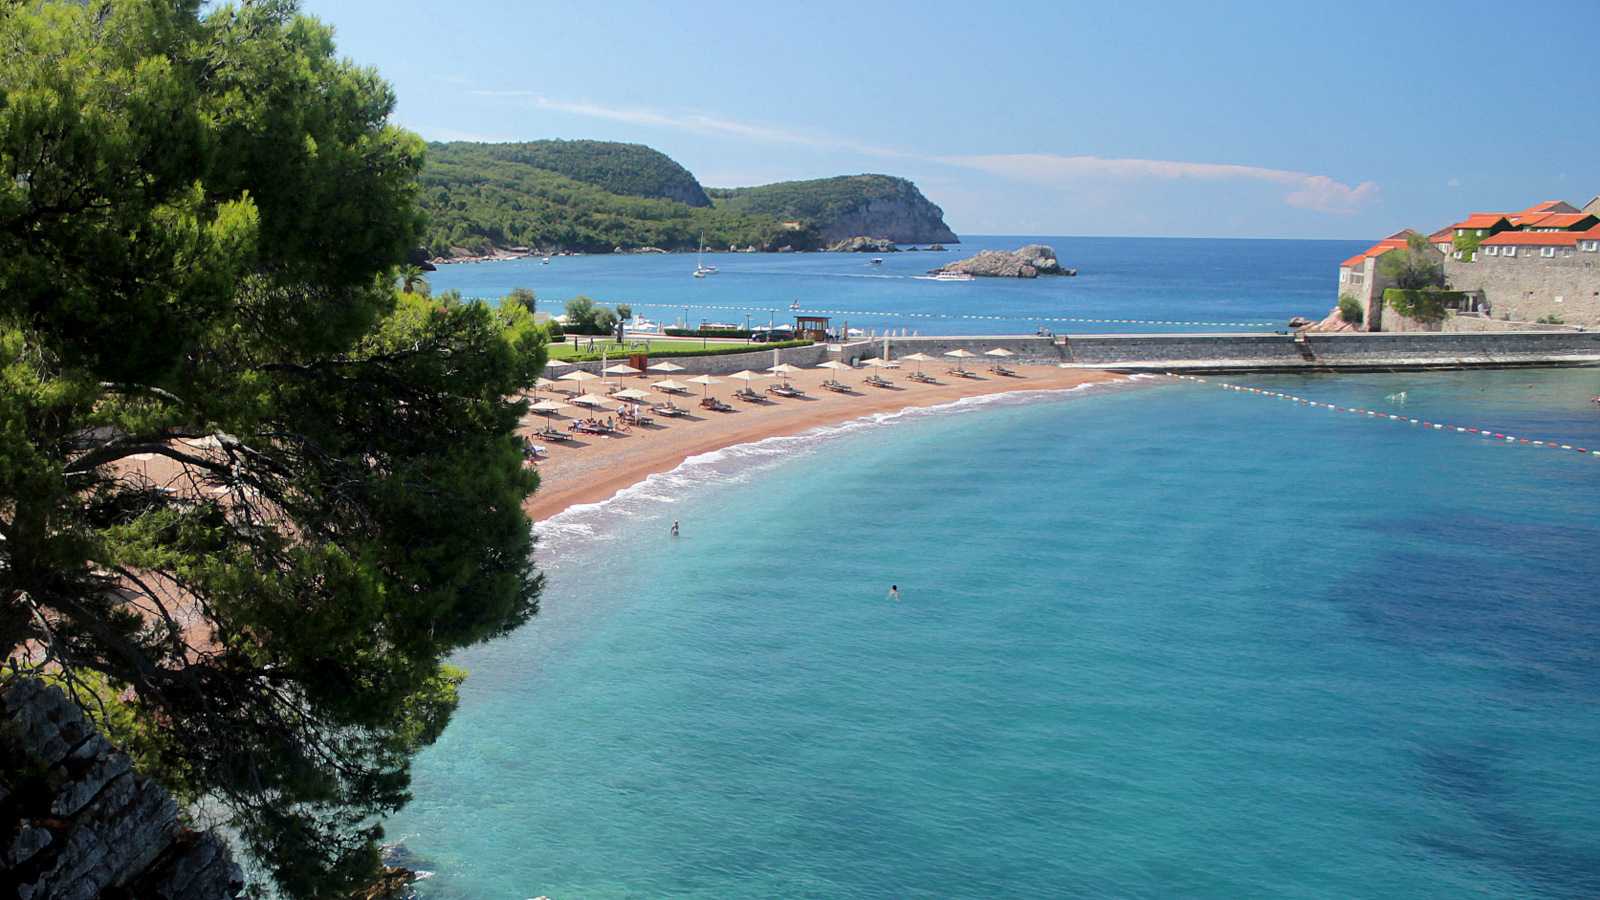 Хорватия отдых на море. лучшие места с детьми. карта курортов, отели, фото, отзывы, цены туров